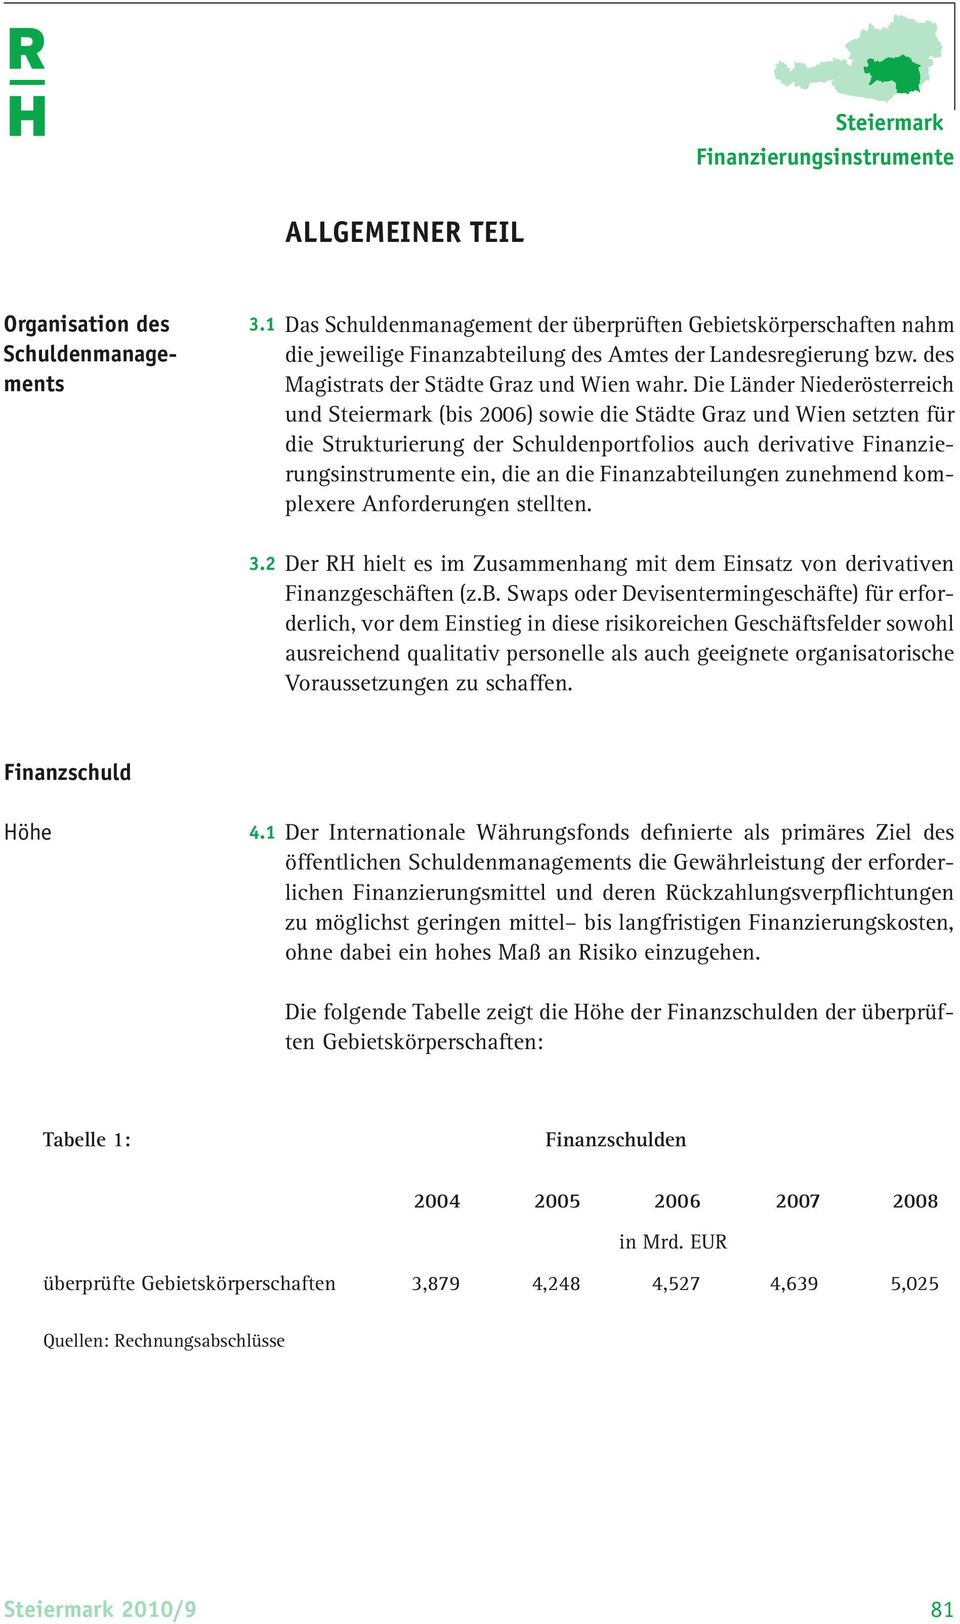 Die Länder Nieder österreich und Steiermark (bis 2006) sowie die Städte Graz und Wien setzten für die Strukturierung der Schuldenportfolios auch derivative Finanzierungsinstrumente ein, die an die